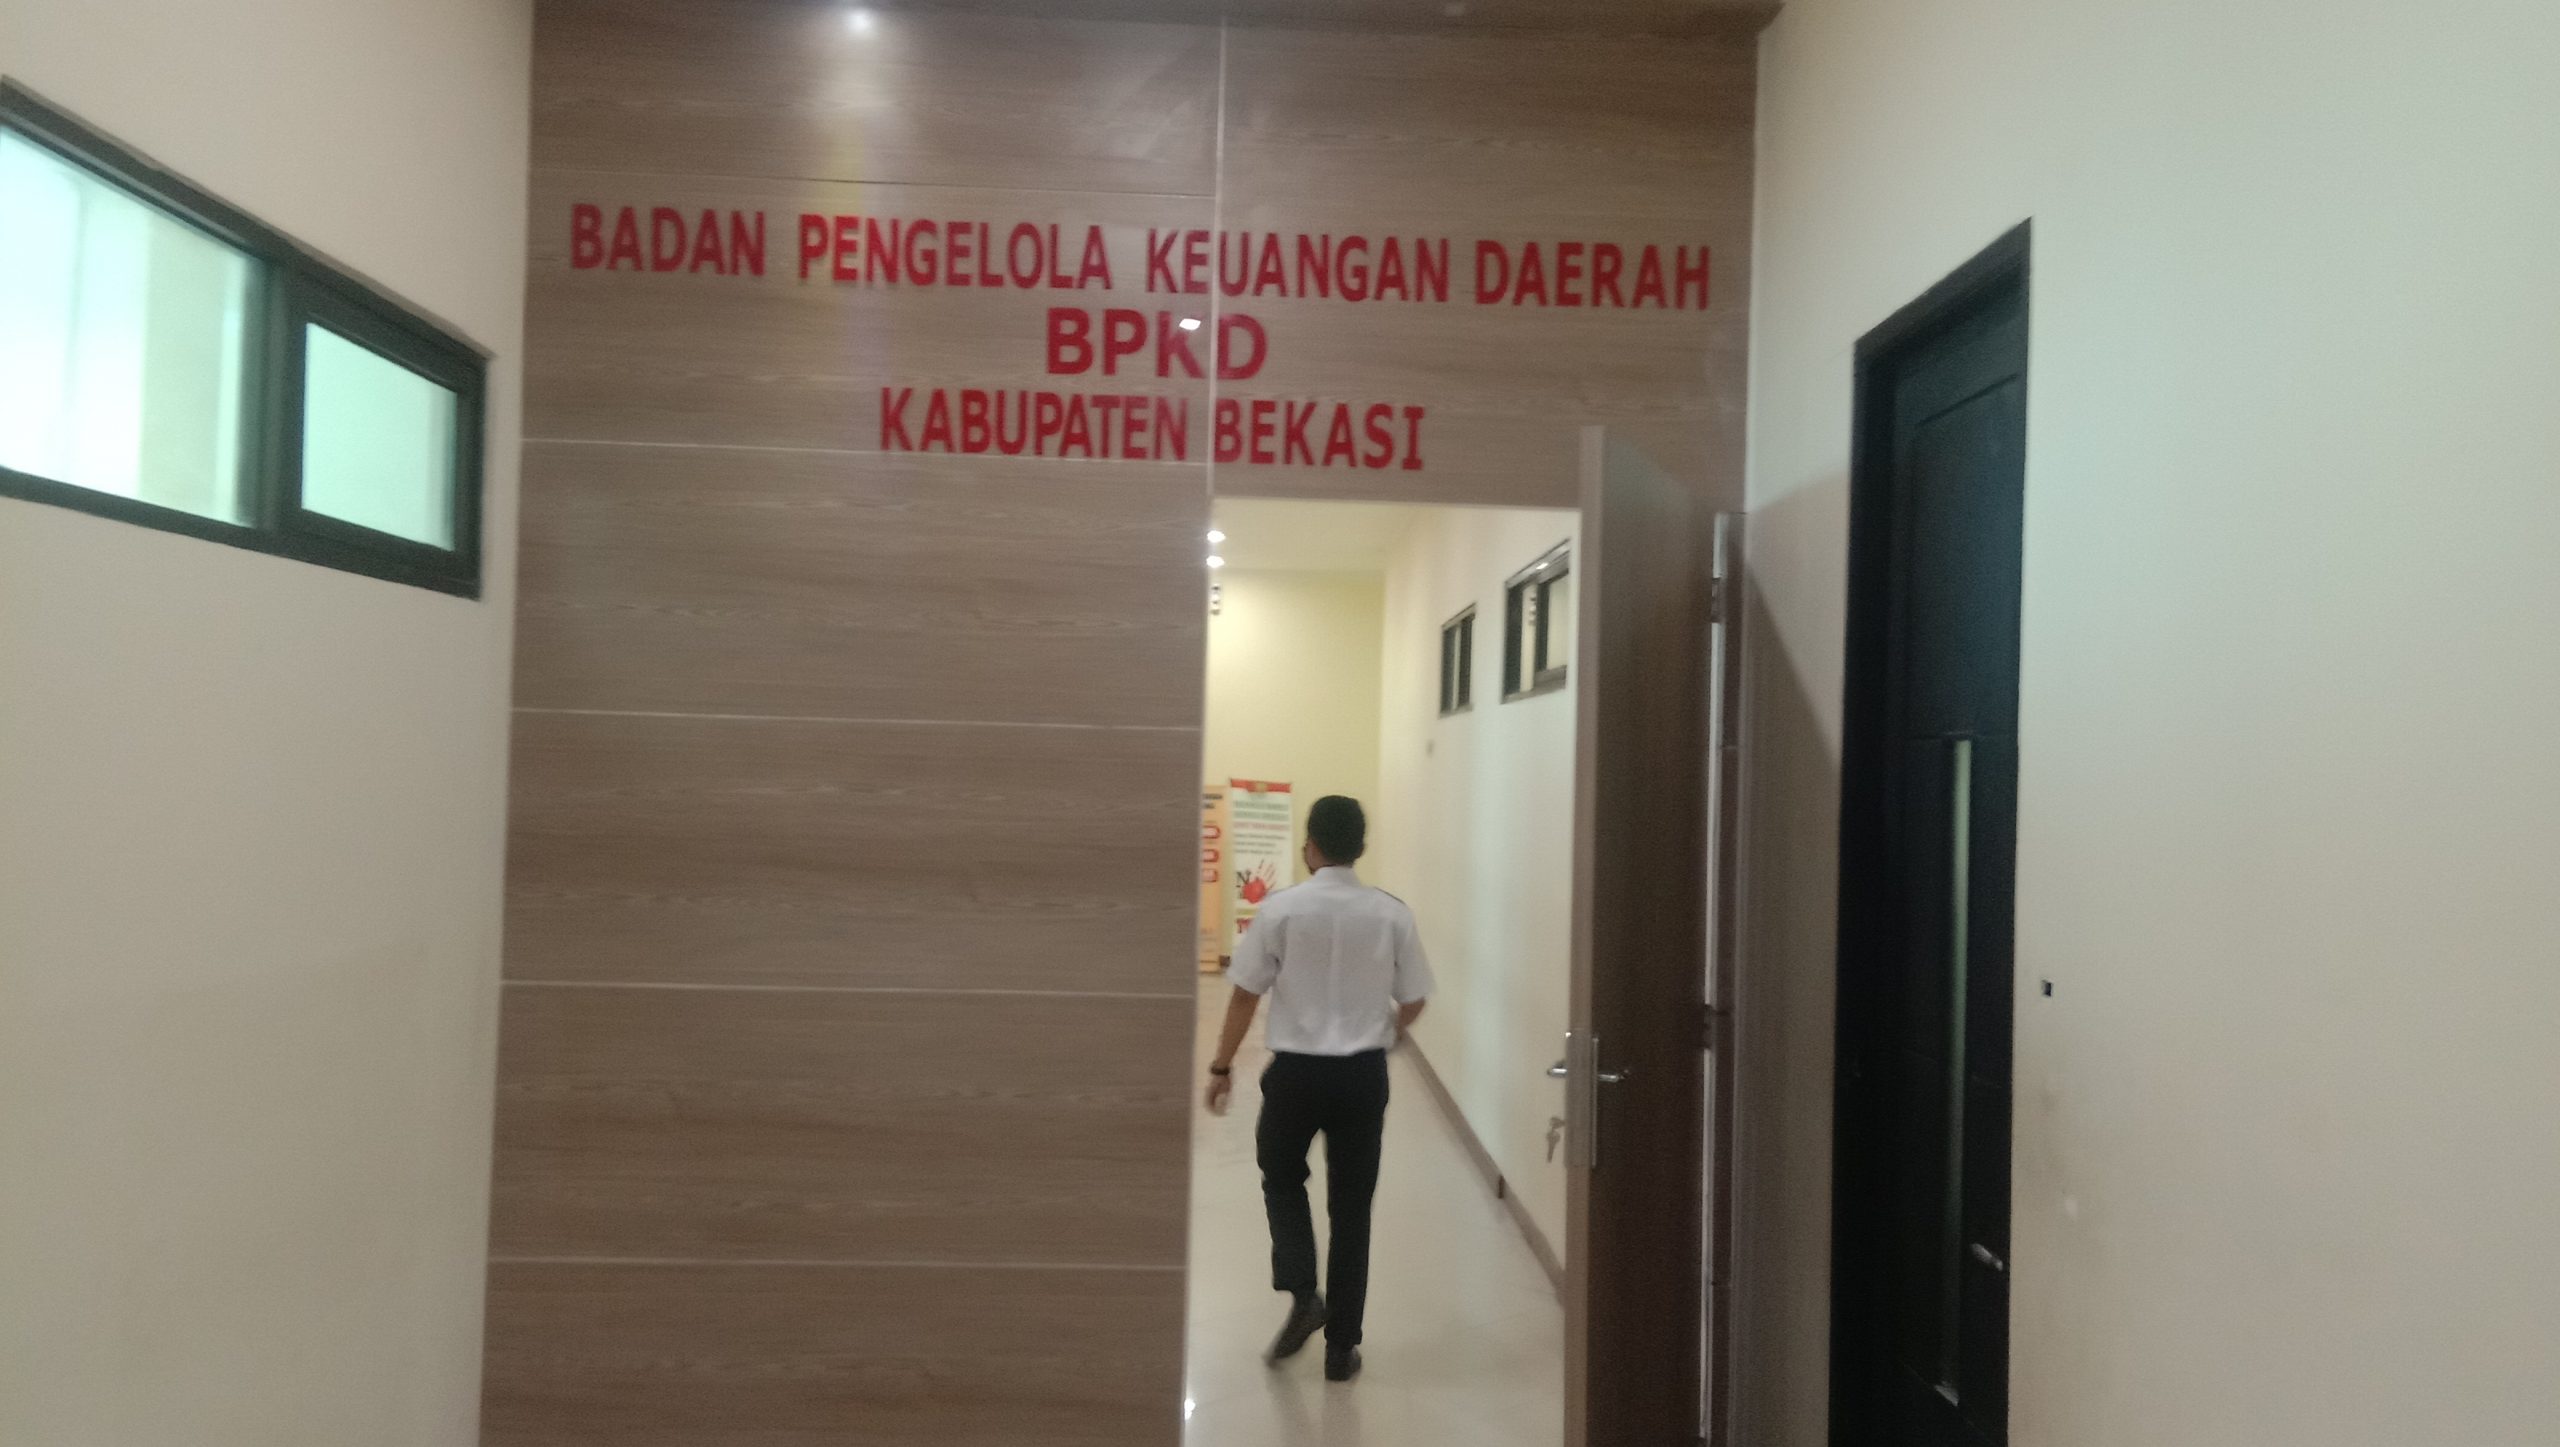 Mengherankan, Dinkes dan BPKD Kabupaten Bekasi Saling Lempar Tanggung Jawab